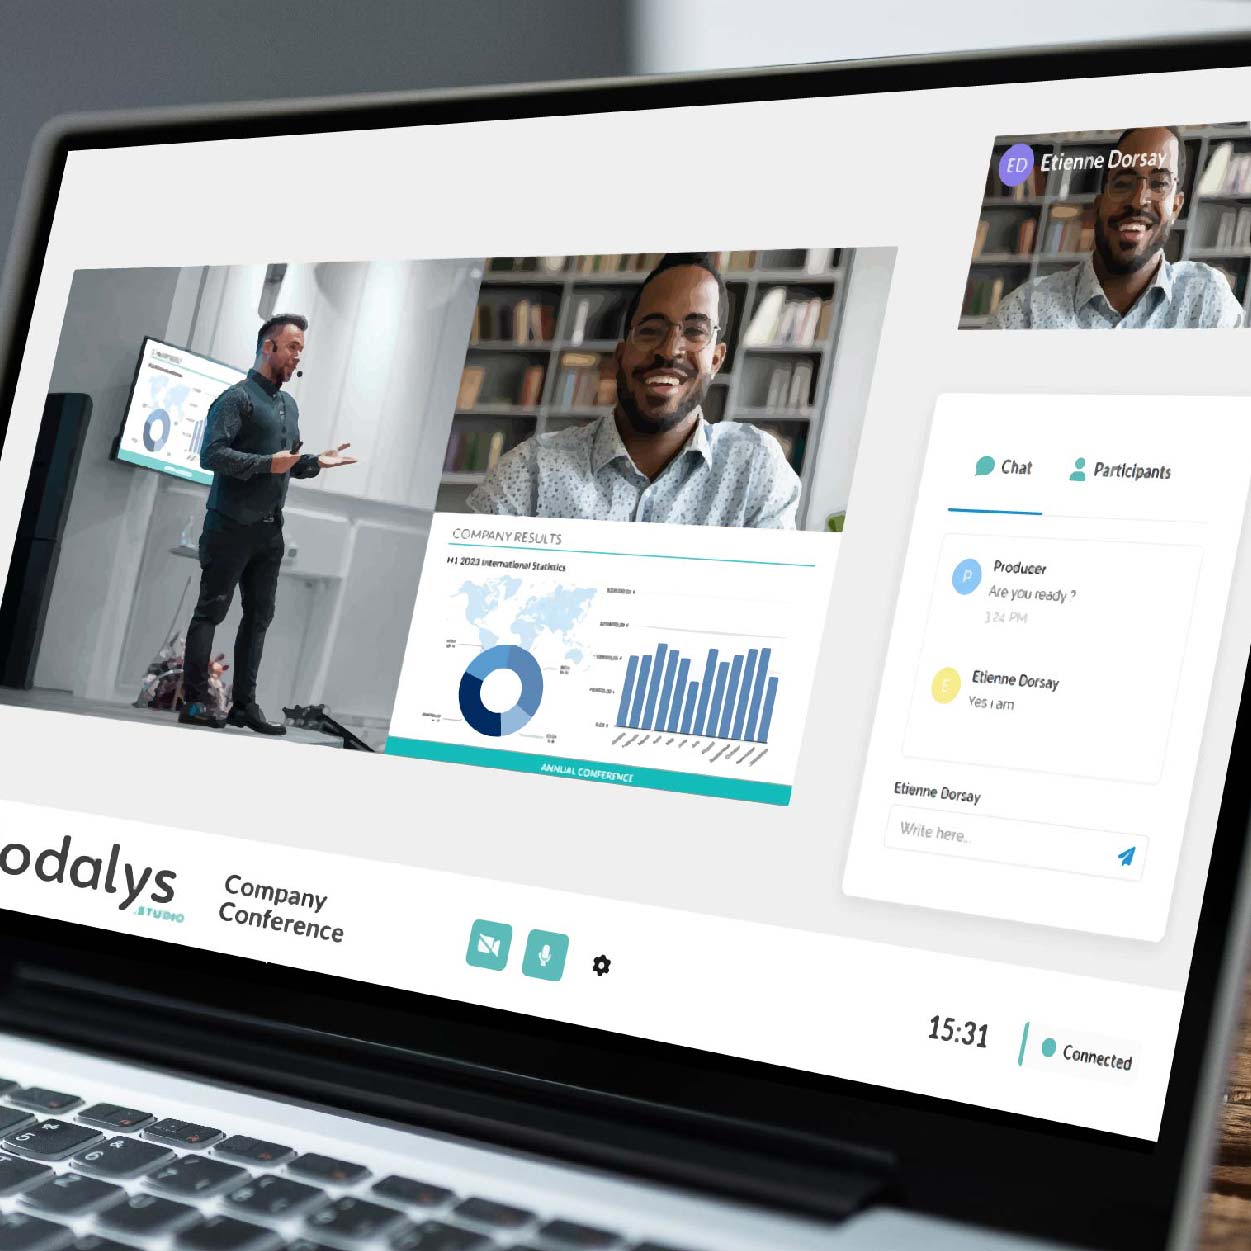 Vodalys unveils new Remote Speaker function